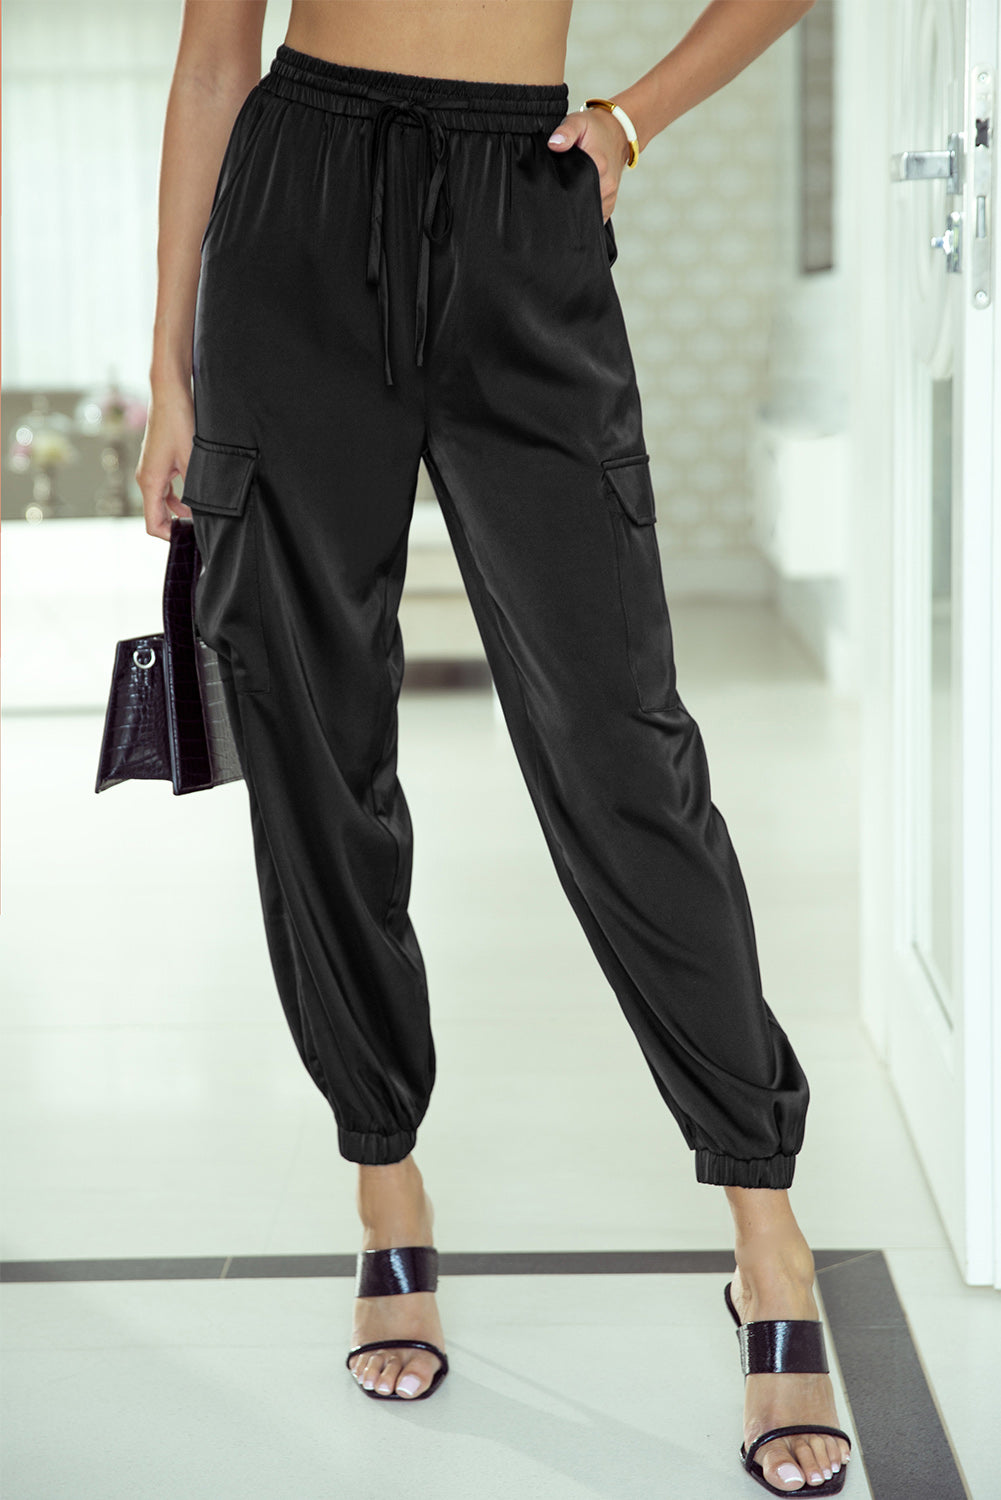 Pantaloni in vita elastica con coulisse in raso nero